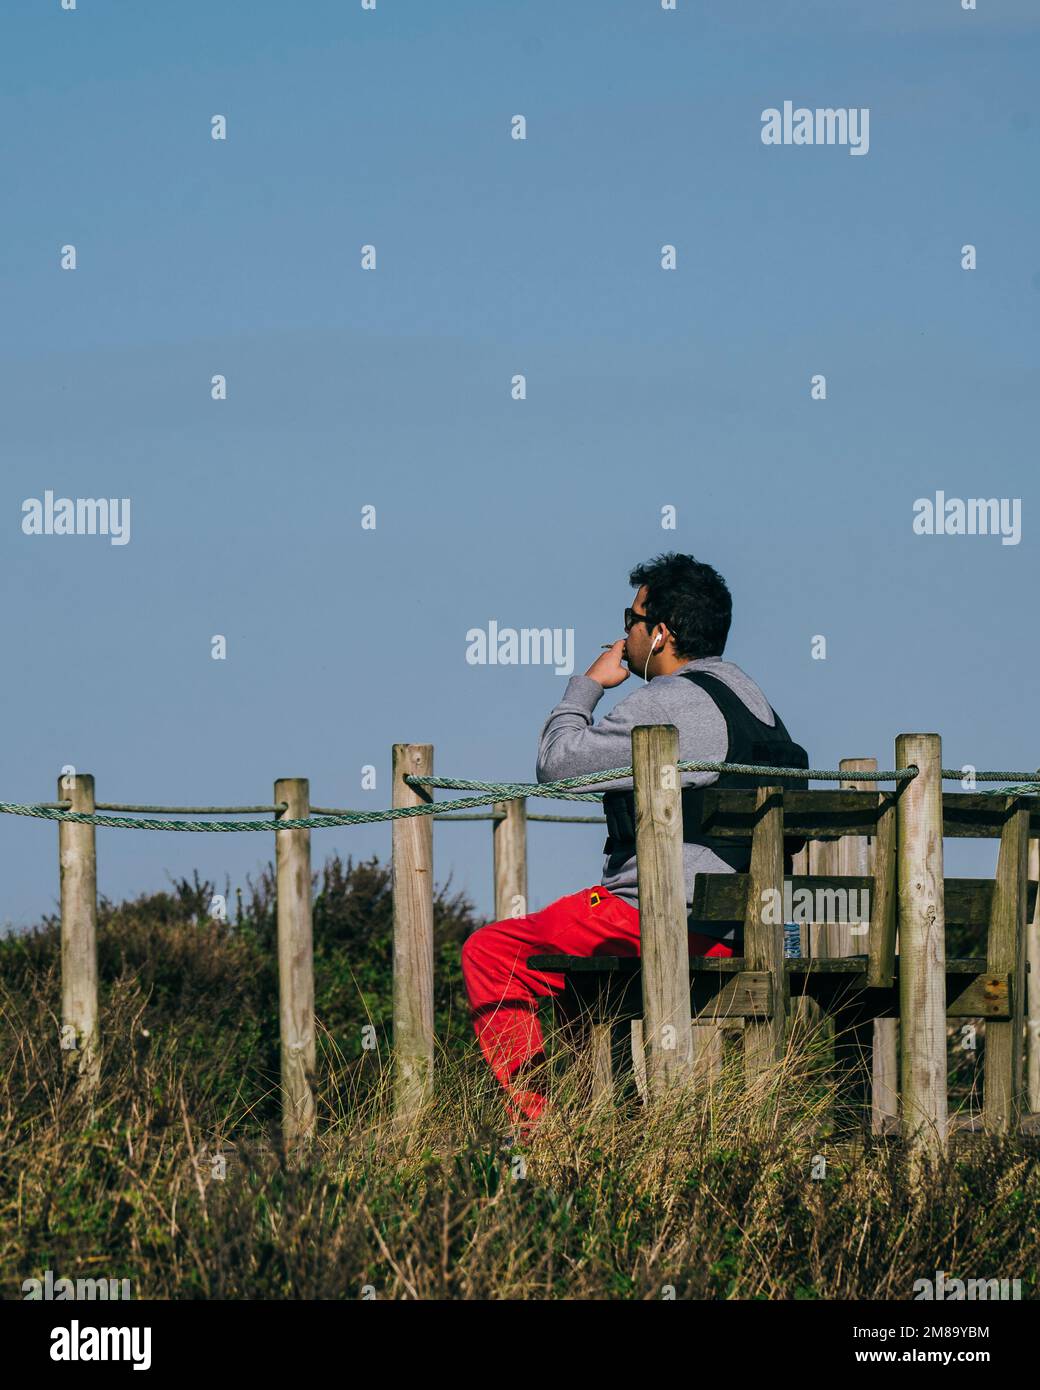 Un jeune homme fume et se détend sur un banc en bois qui donne sur la mer tout en écoutant de la musique Banque D'Images